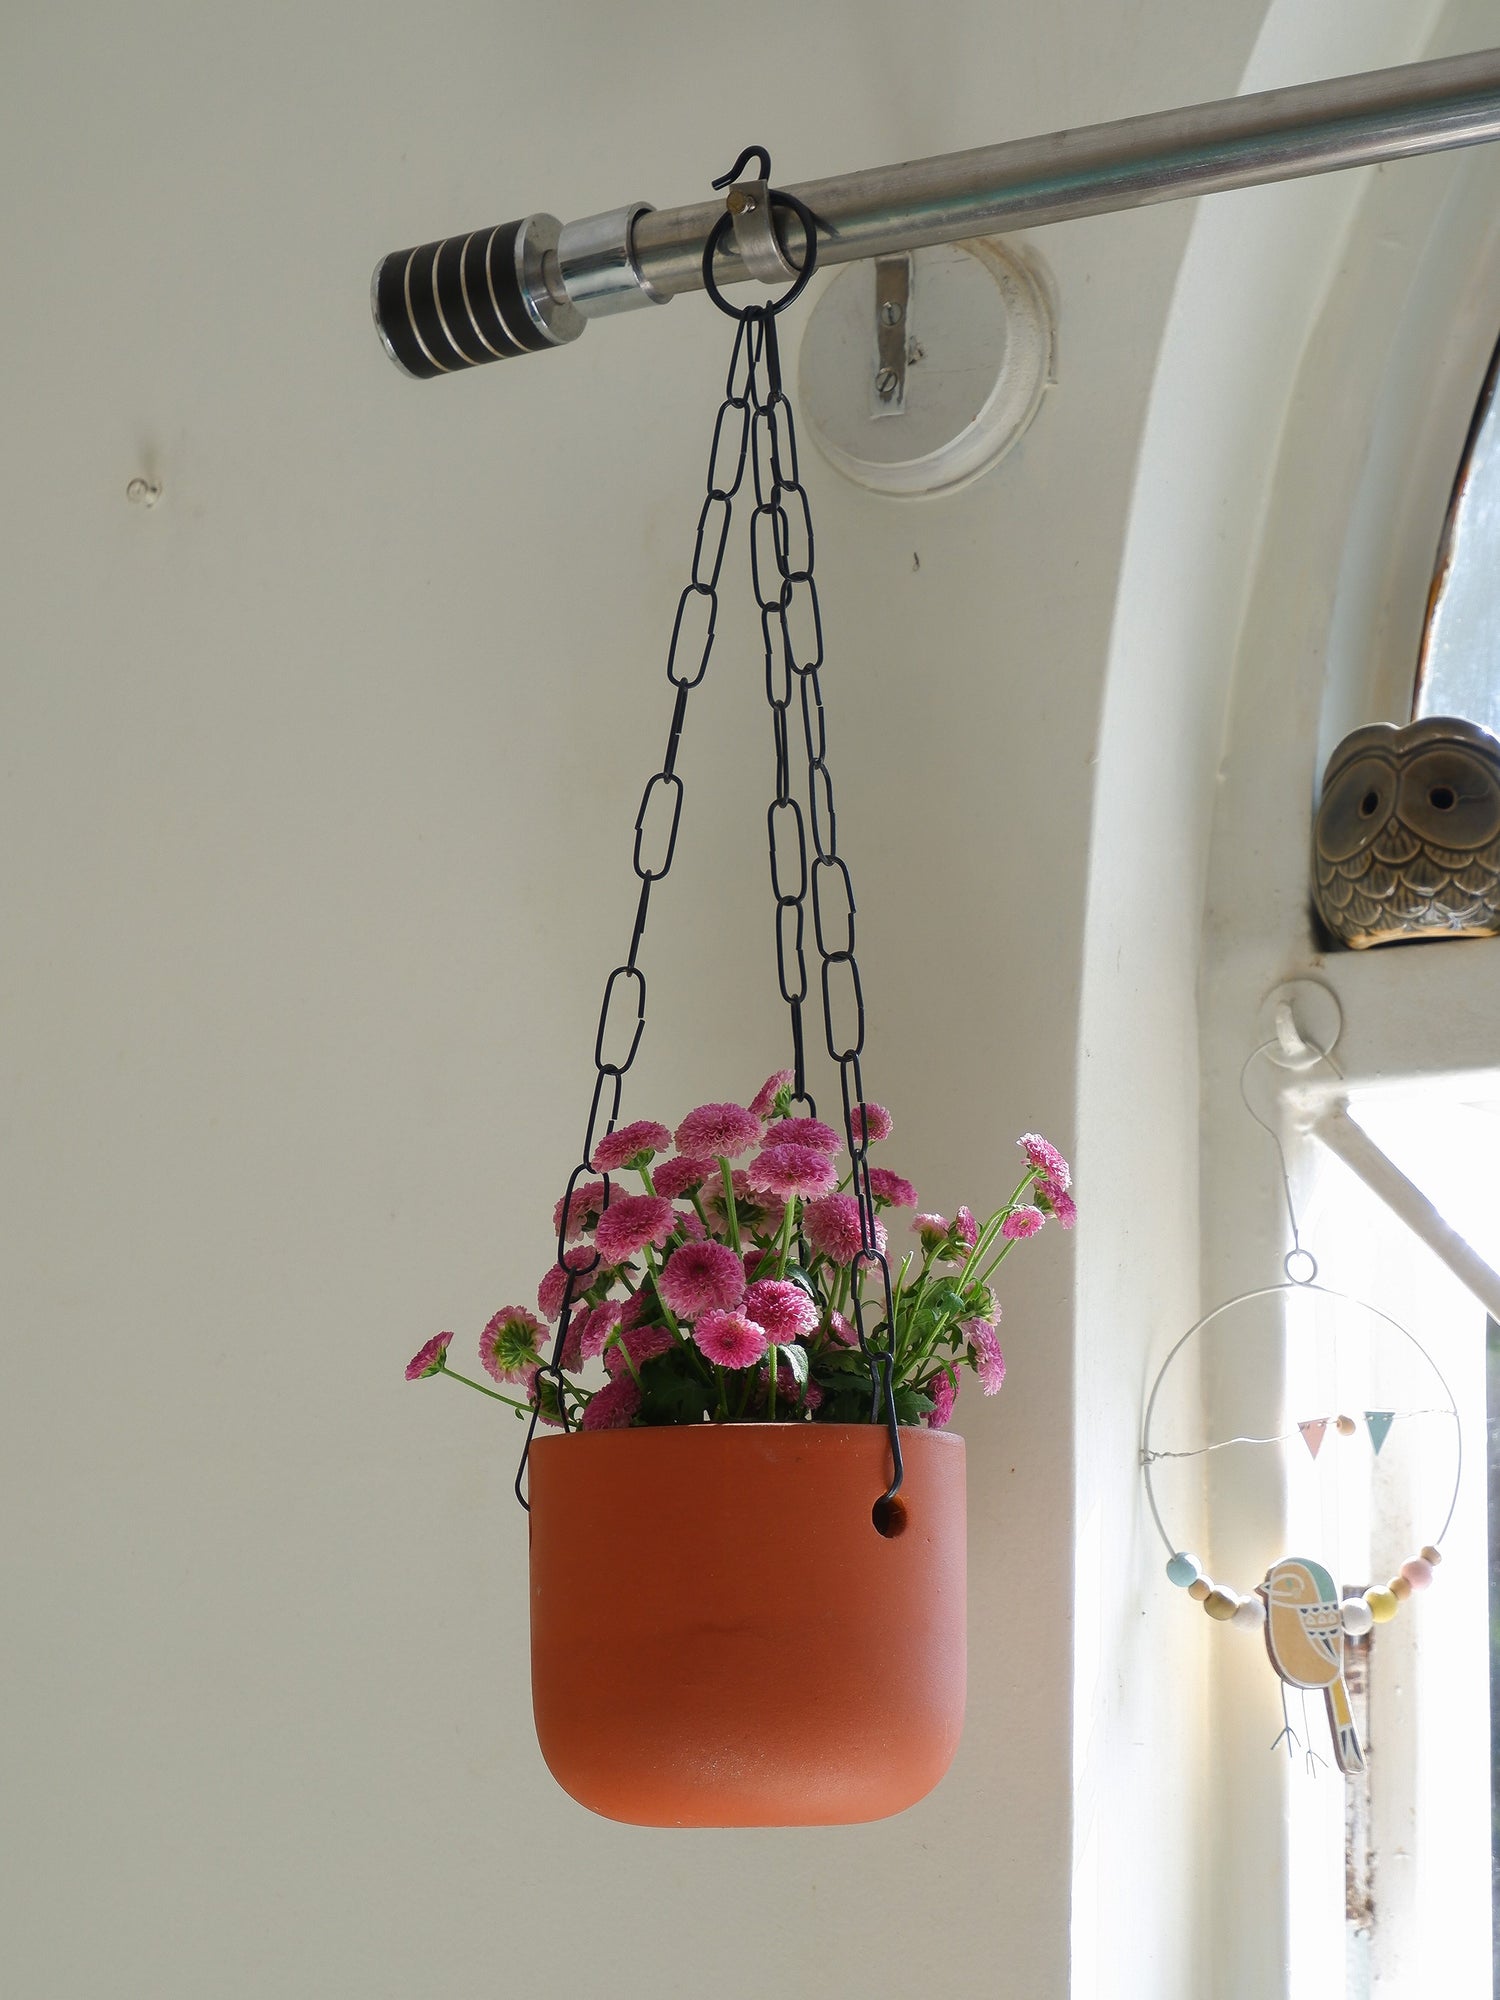 Prakrti garden boutique sells online hanging pots for indoor plants delivered all India